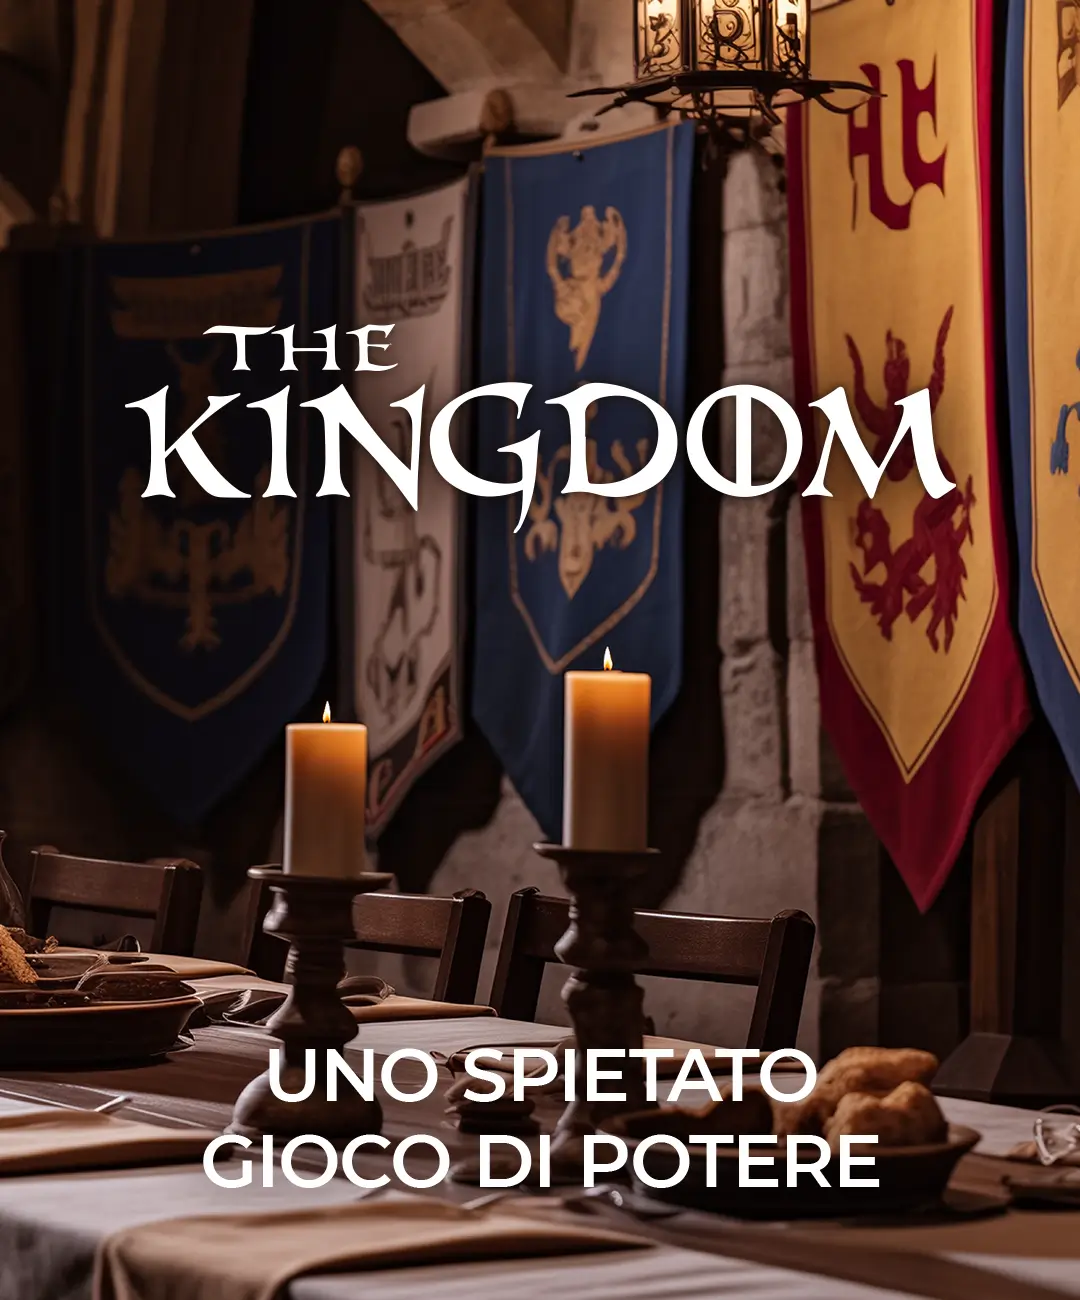 The Kingdom  Cena Evento Medievale